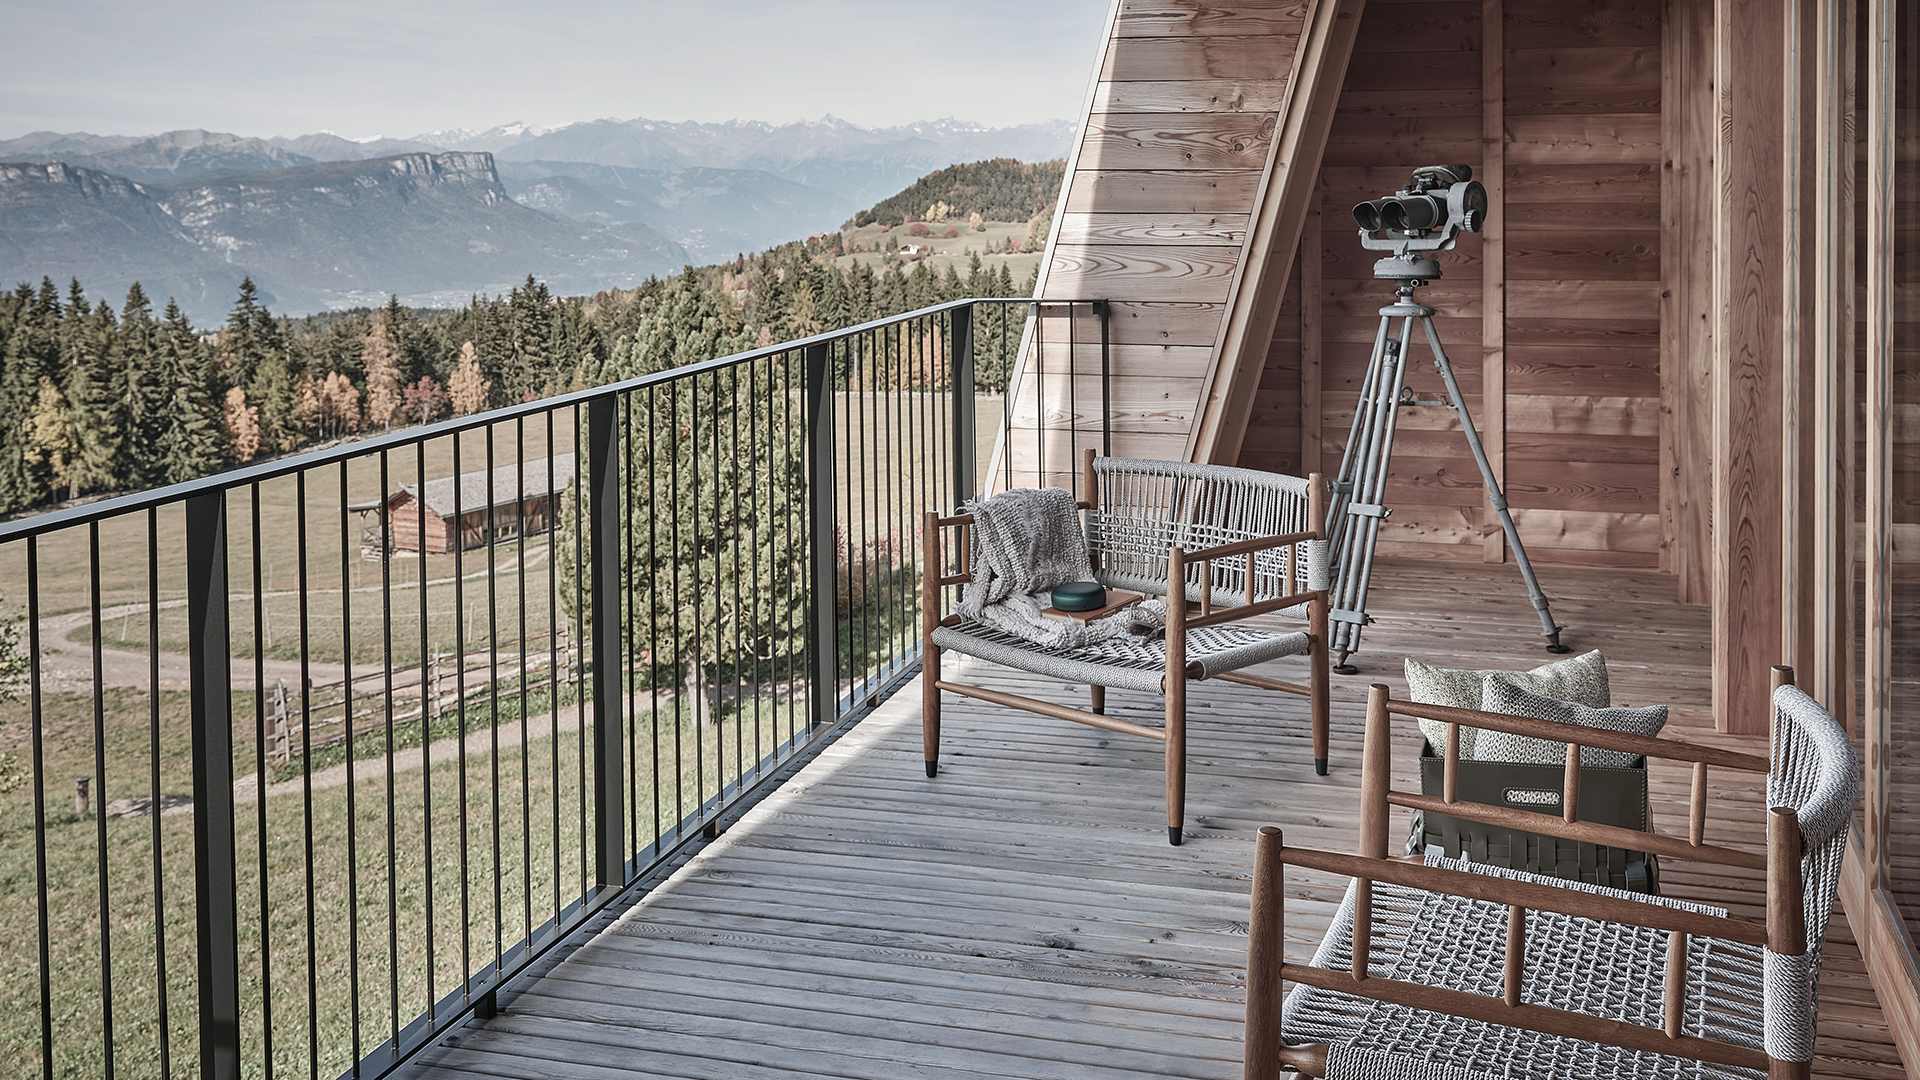 Sul terrazzo, un binocolo per ammirare il panorama alpino.